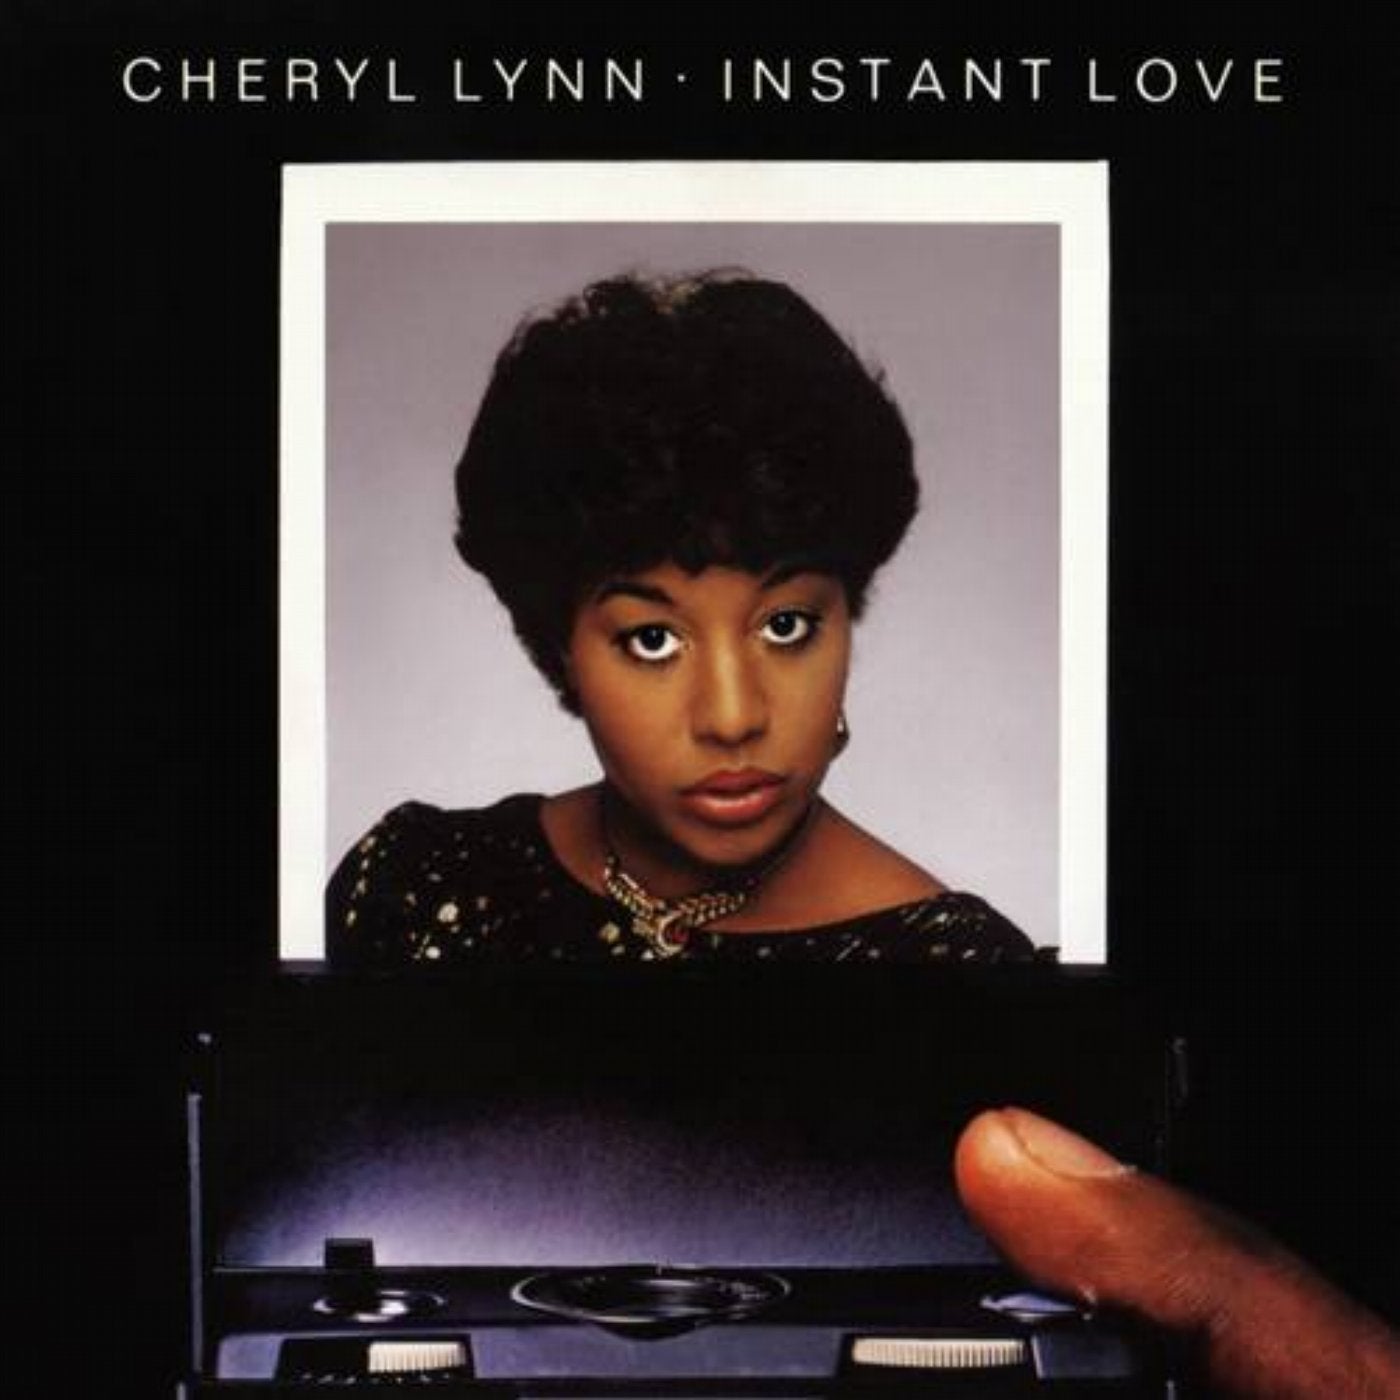 Cheryl Lynn - Got To Be Real (Audio) 